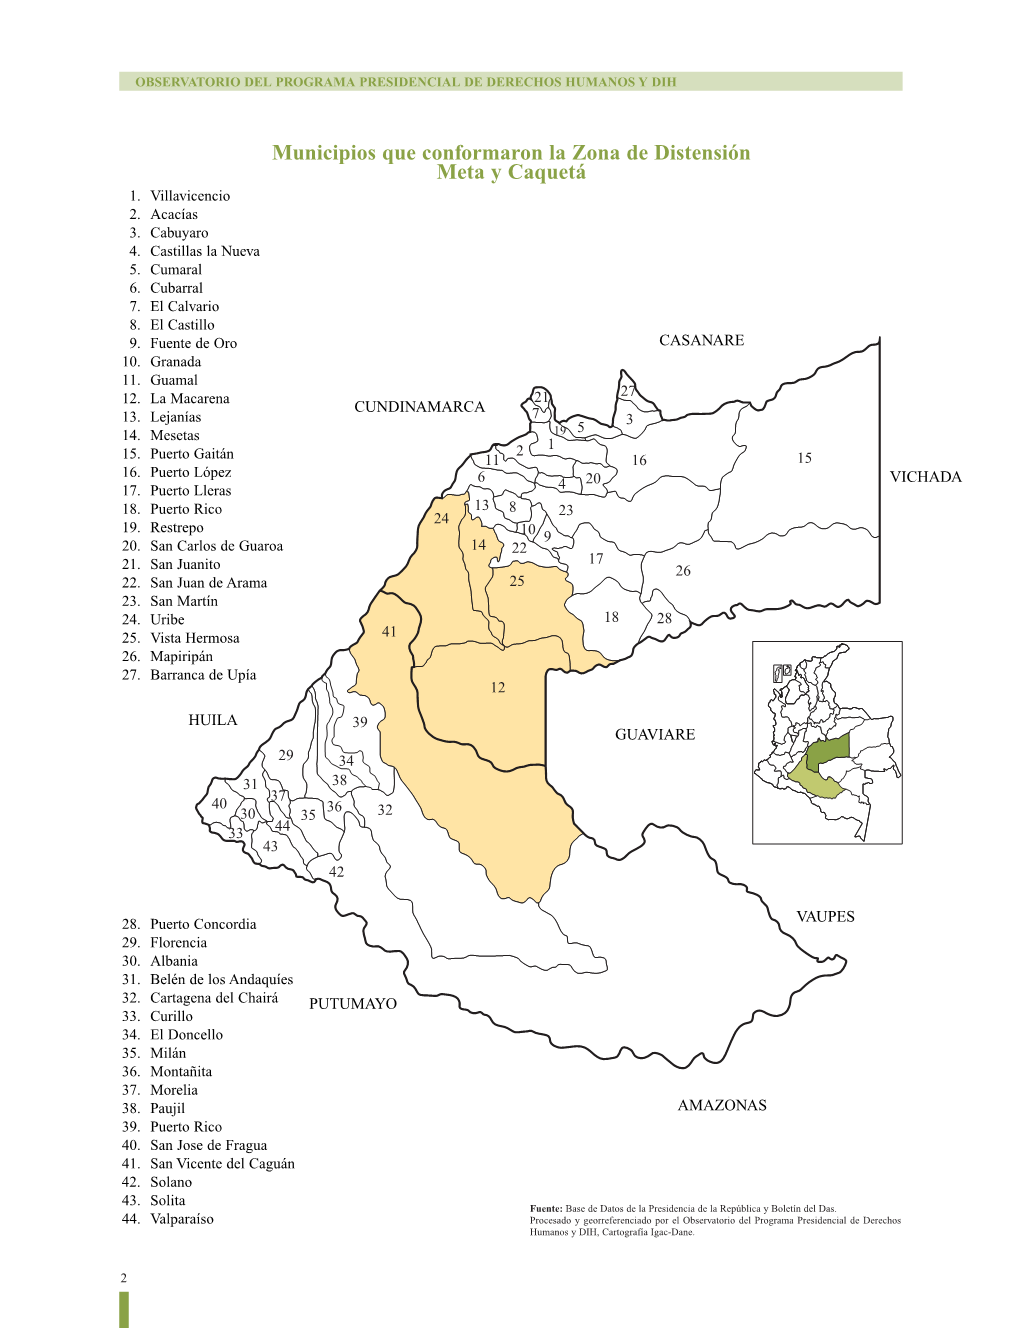 Municipios Que Conformaron La Zona De Distensión Meta Y Caquetá 1